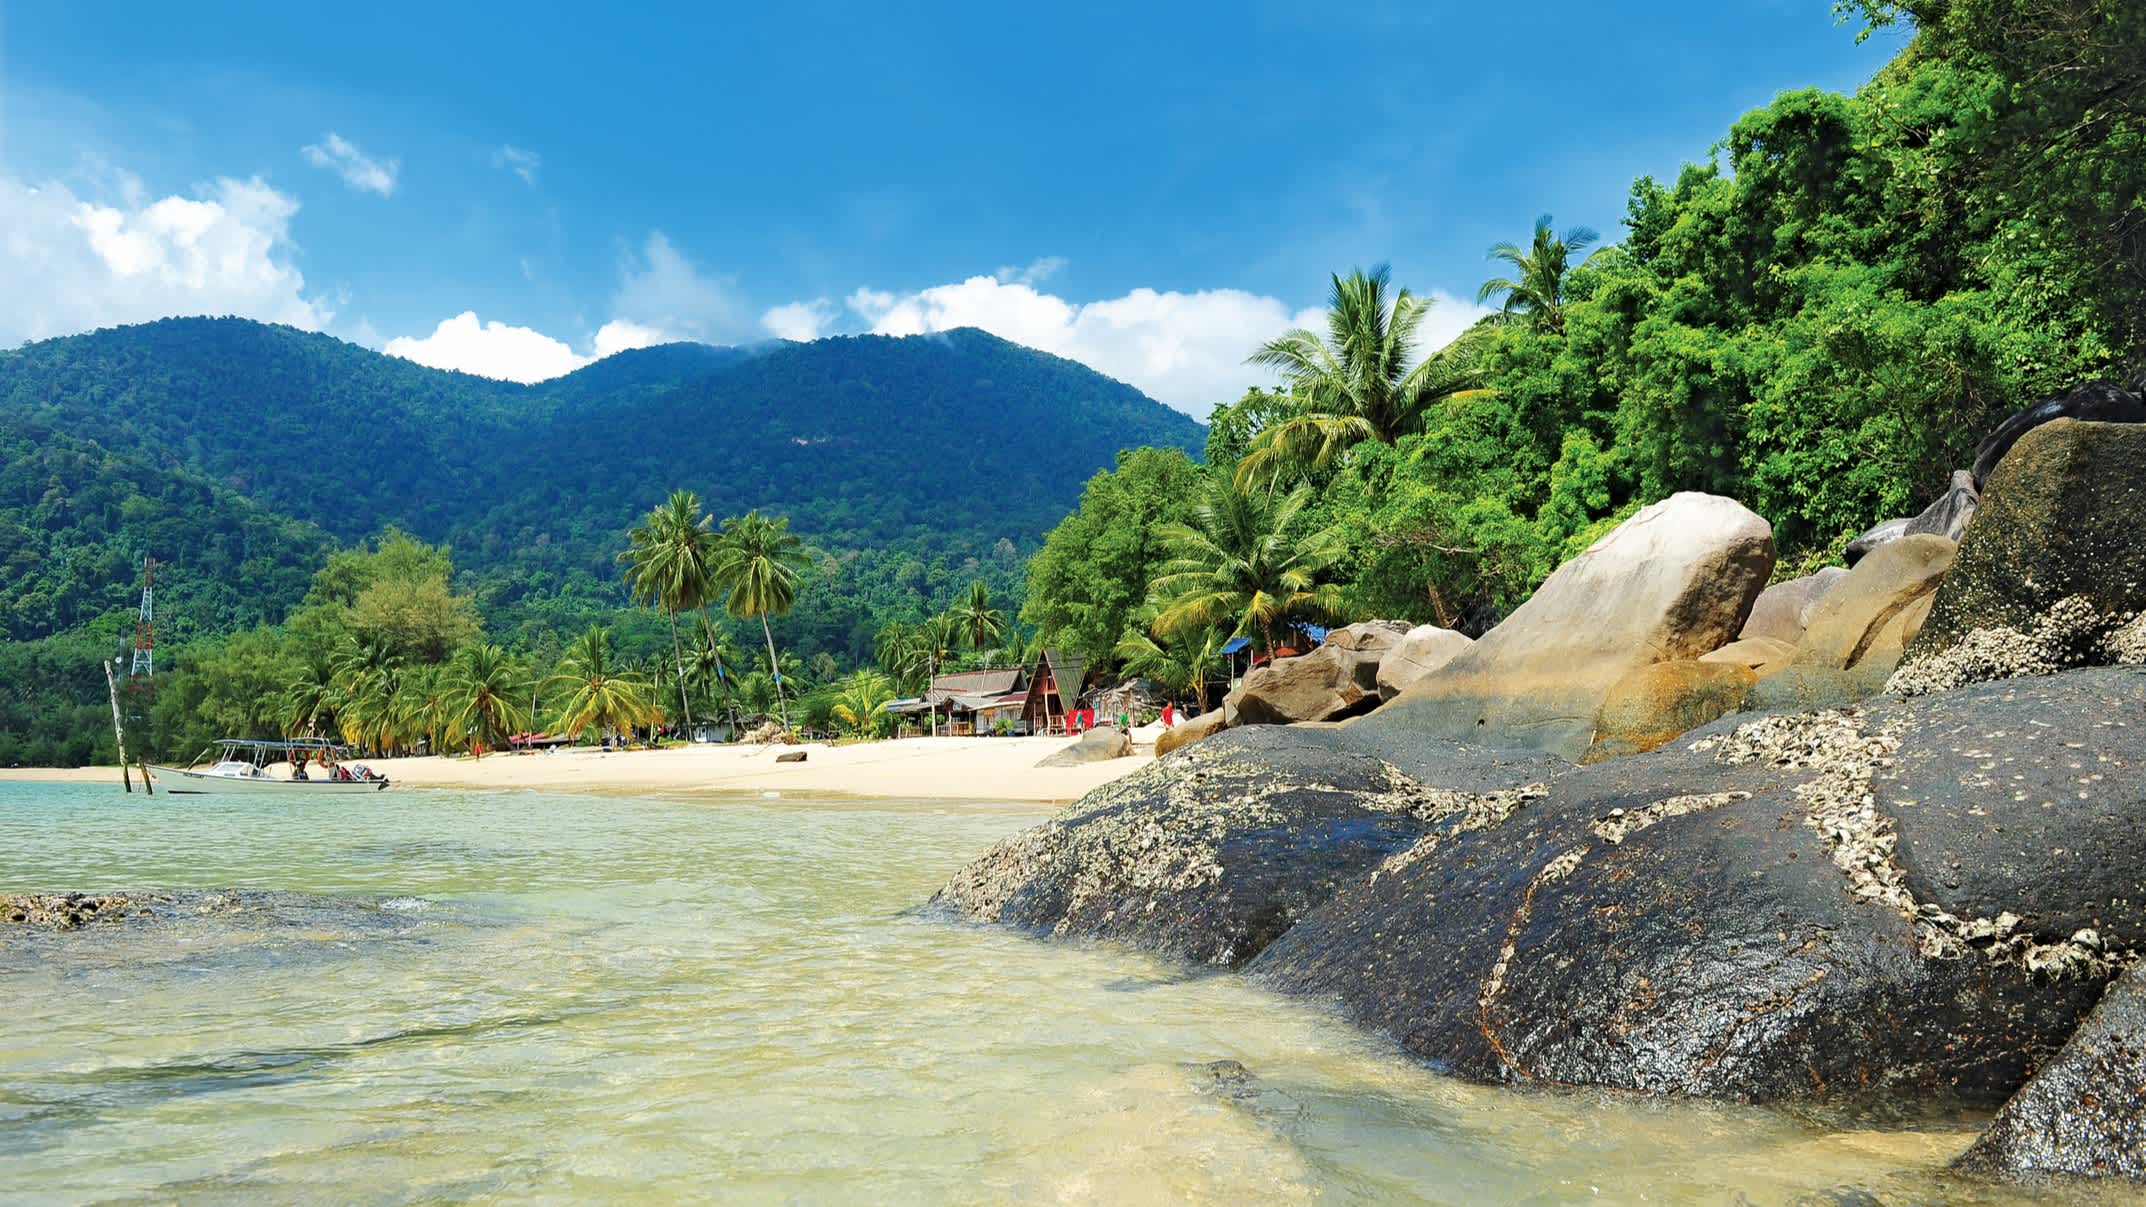 Rocher dans l'eau translucide avec la plage bordée de palmiers de Monkey Bay, en Malaisie.